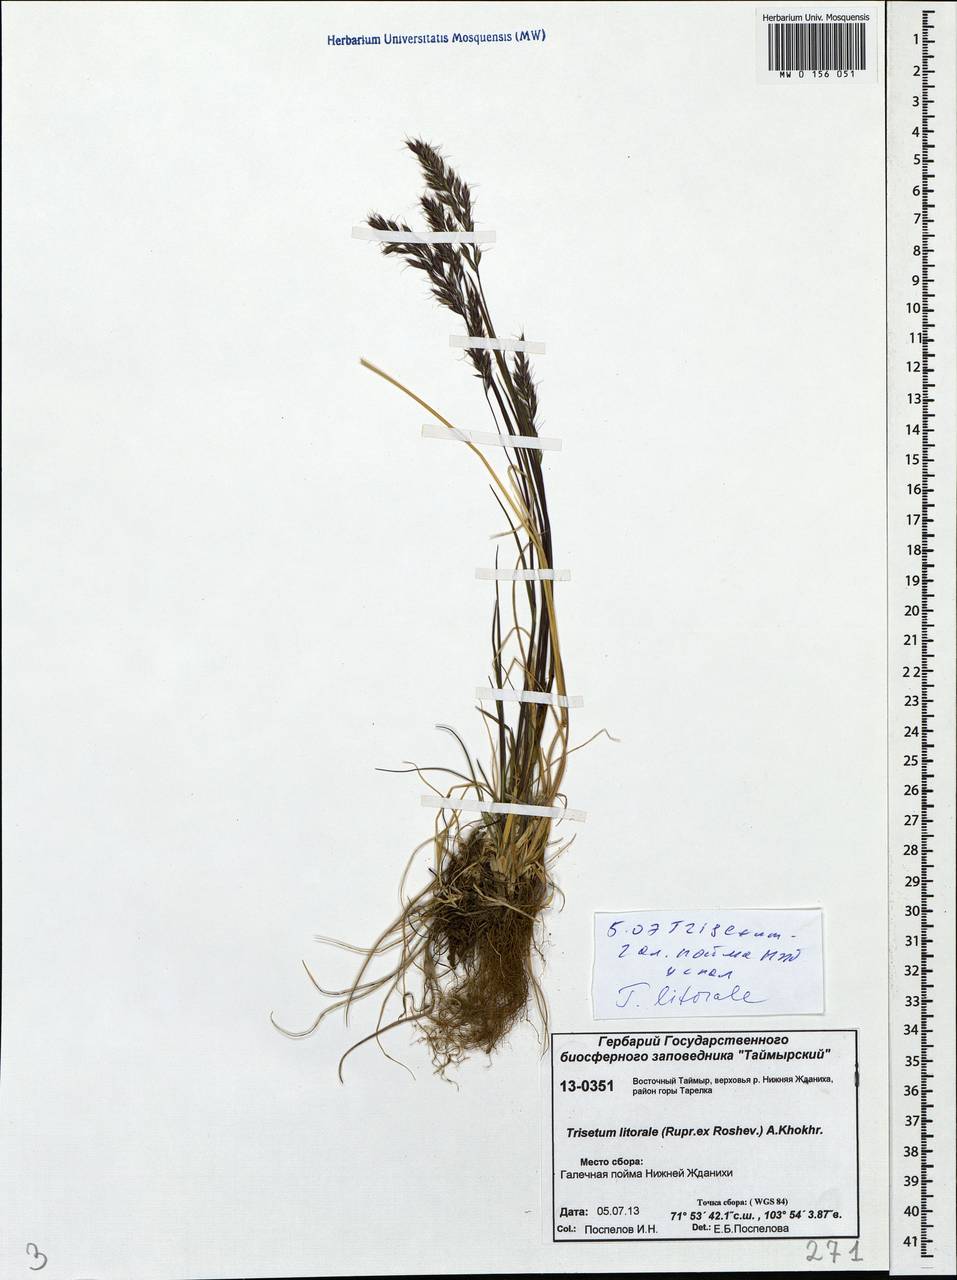 Trisetum sibiricum Rupr., Siberia, Central Siberia (S3) (Russia)